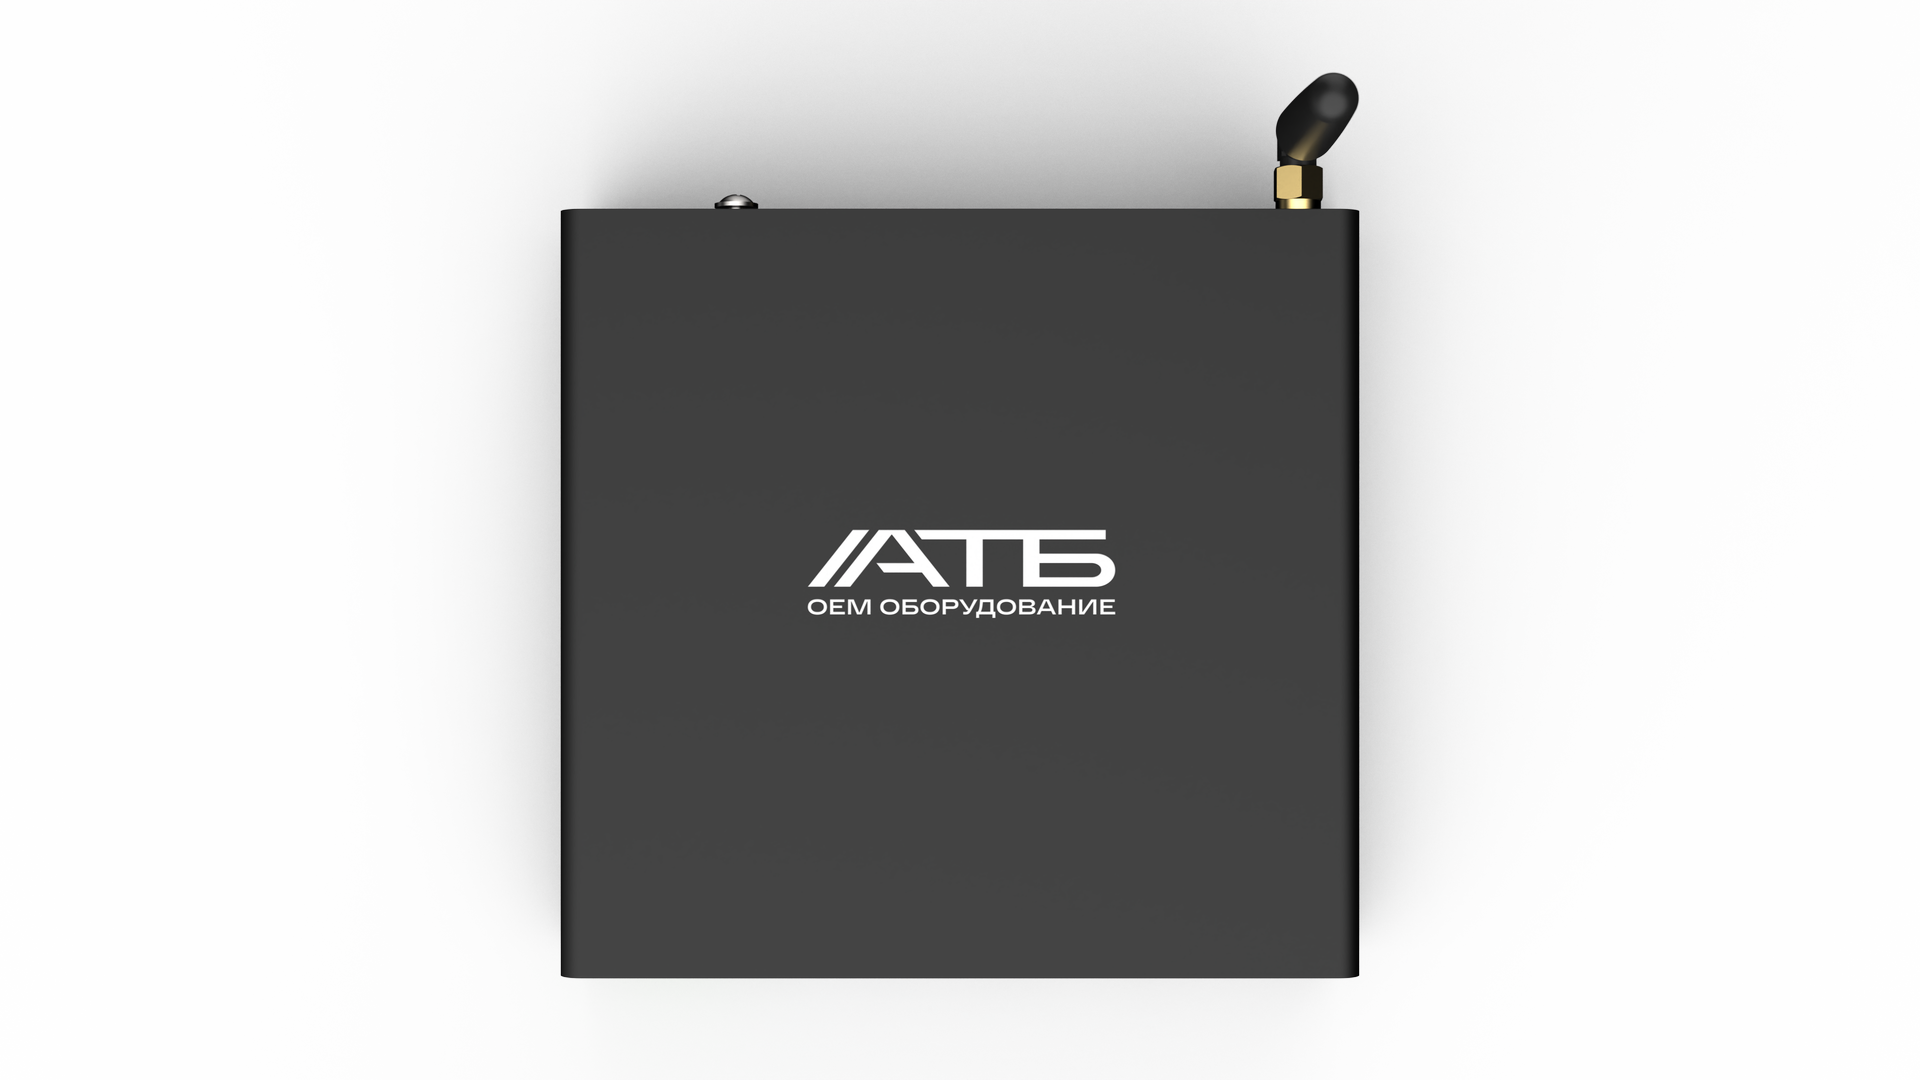 АТБ-АТОМ-1 Мини-компьютер Intel Atom E3815, E3825, E3845, 1,3-1,9 ГГц, до 4 ядер